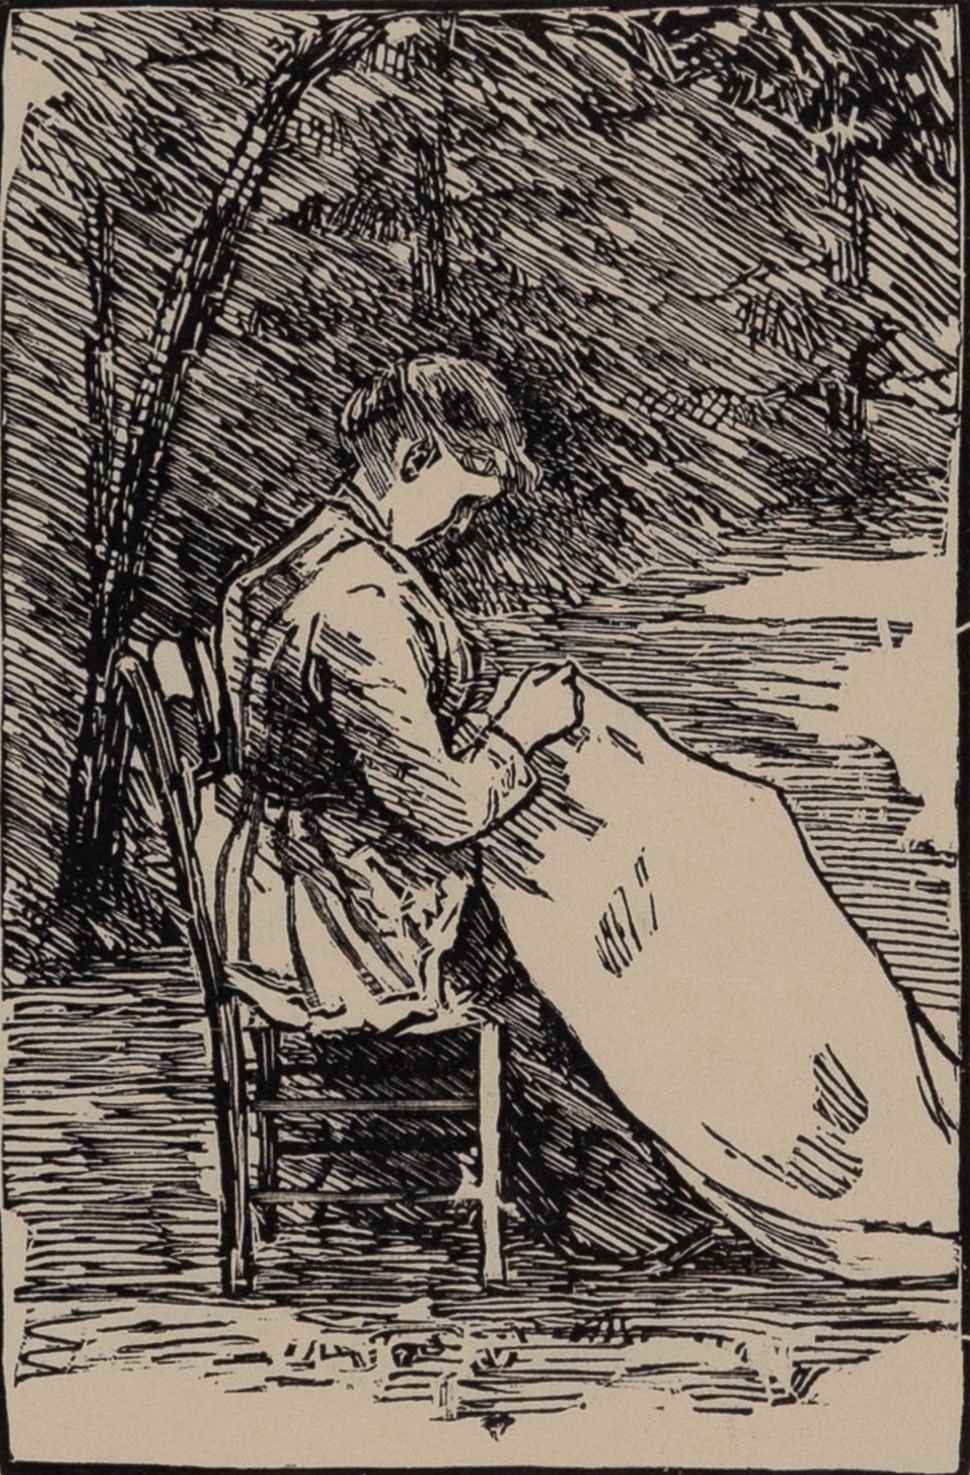 Nini - Lucien Pissarro (1863 - 1944)